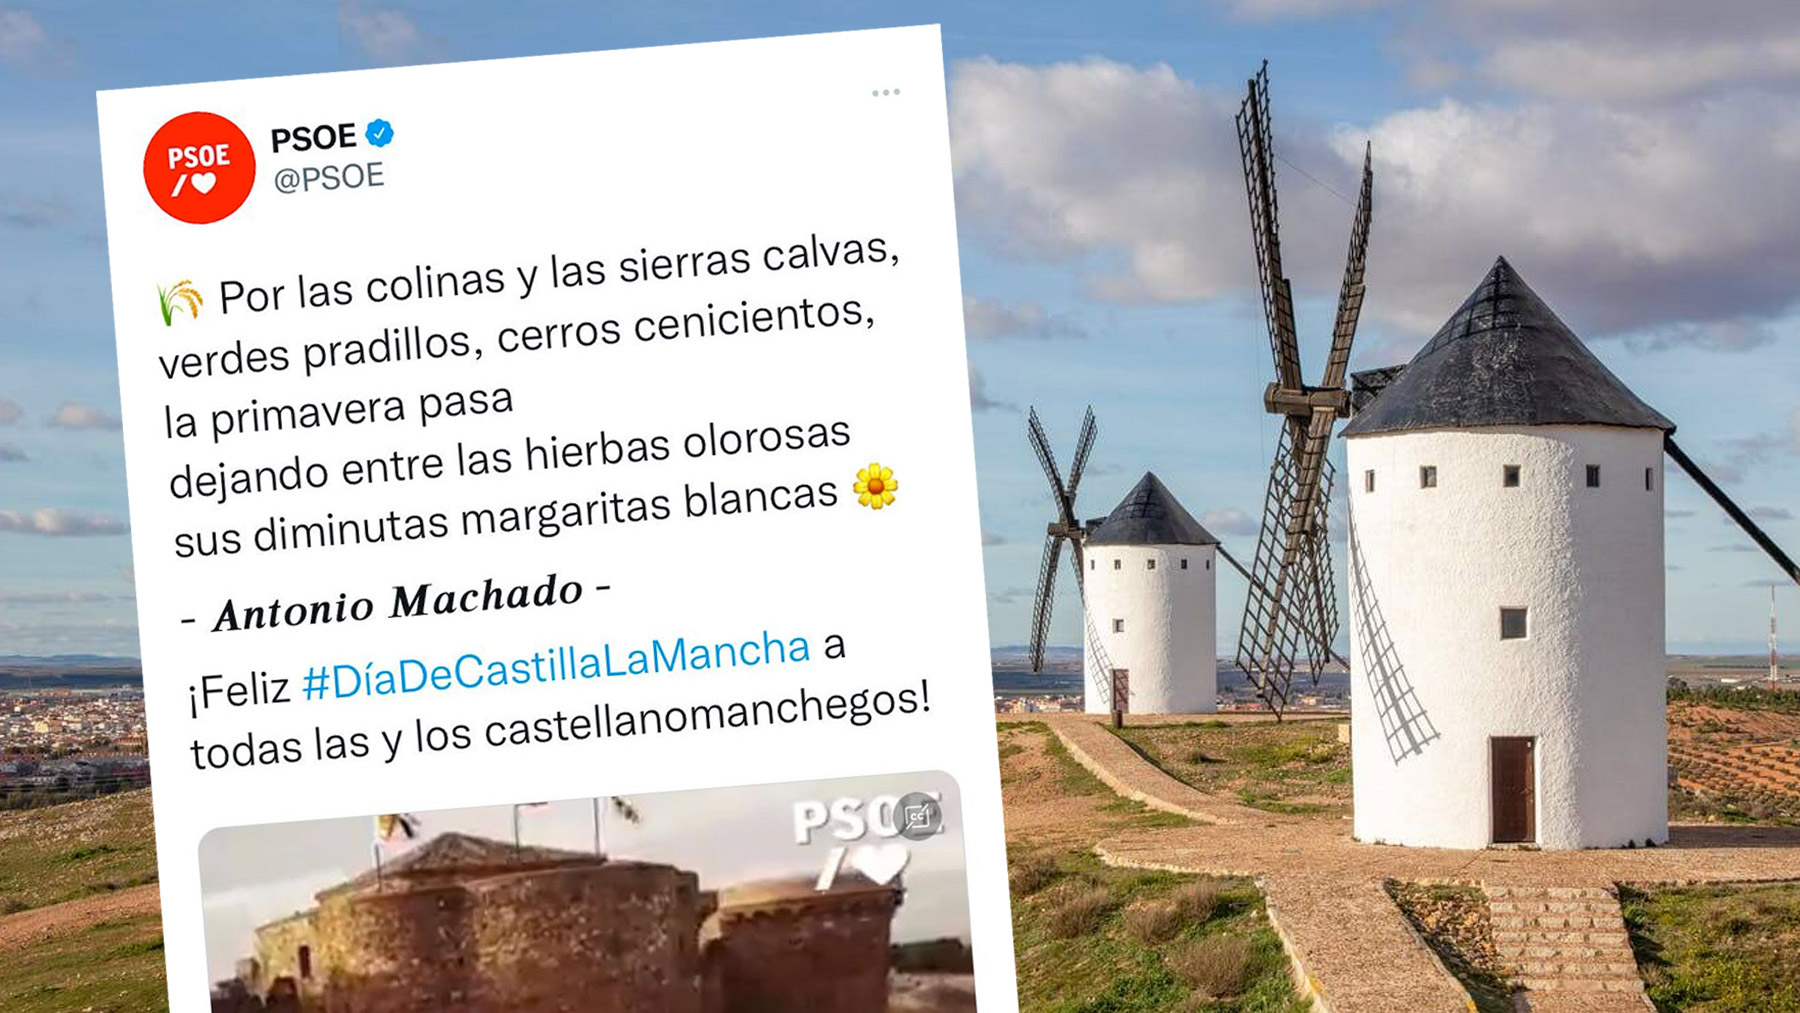 Tuit del PSOE felicitando el Día de Castilla la Mancha.